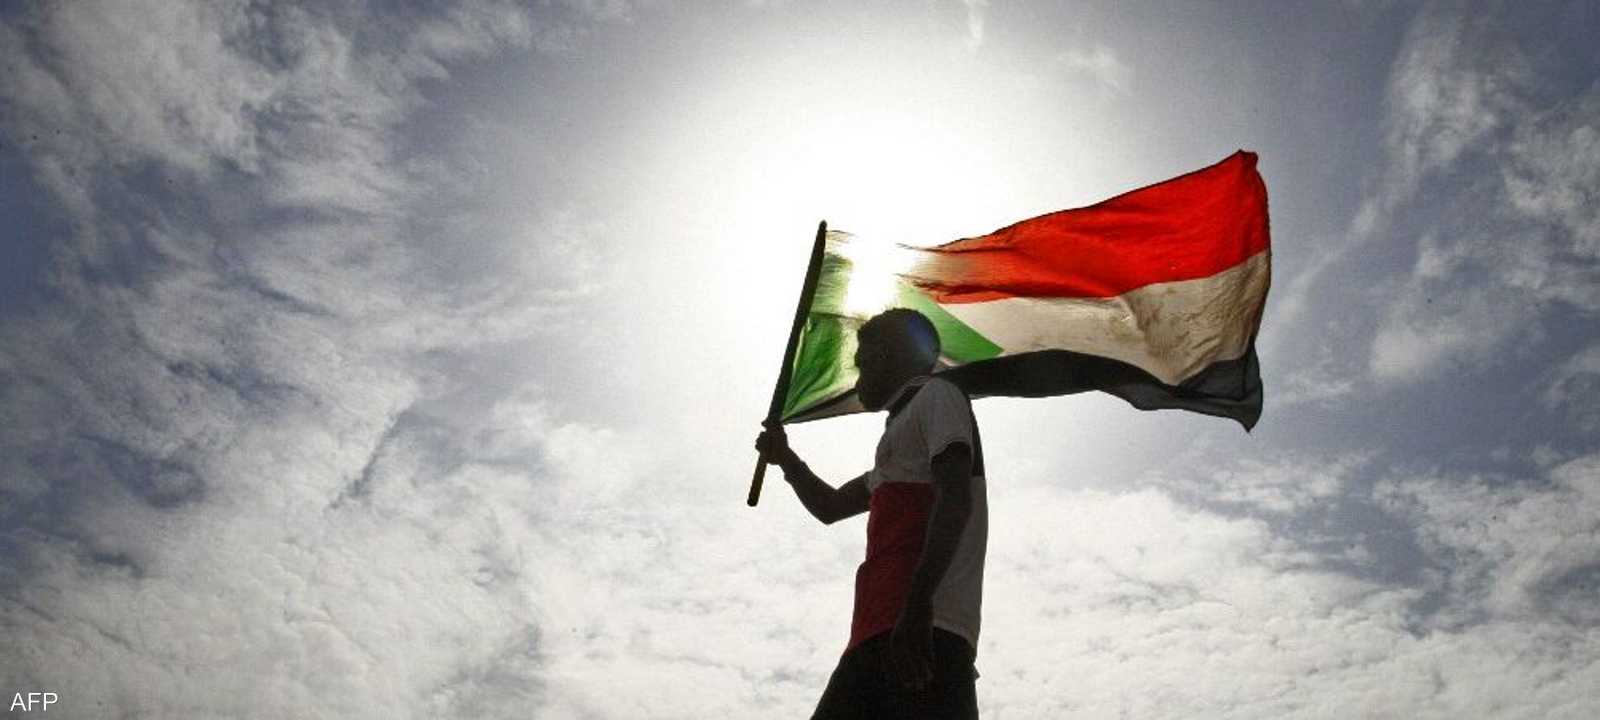 تعتبر الديون الخارجية عقبة كبيرة أمام إنعاش الاقتصاد السودان